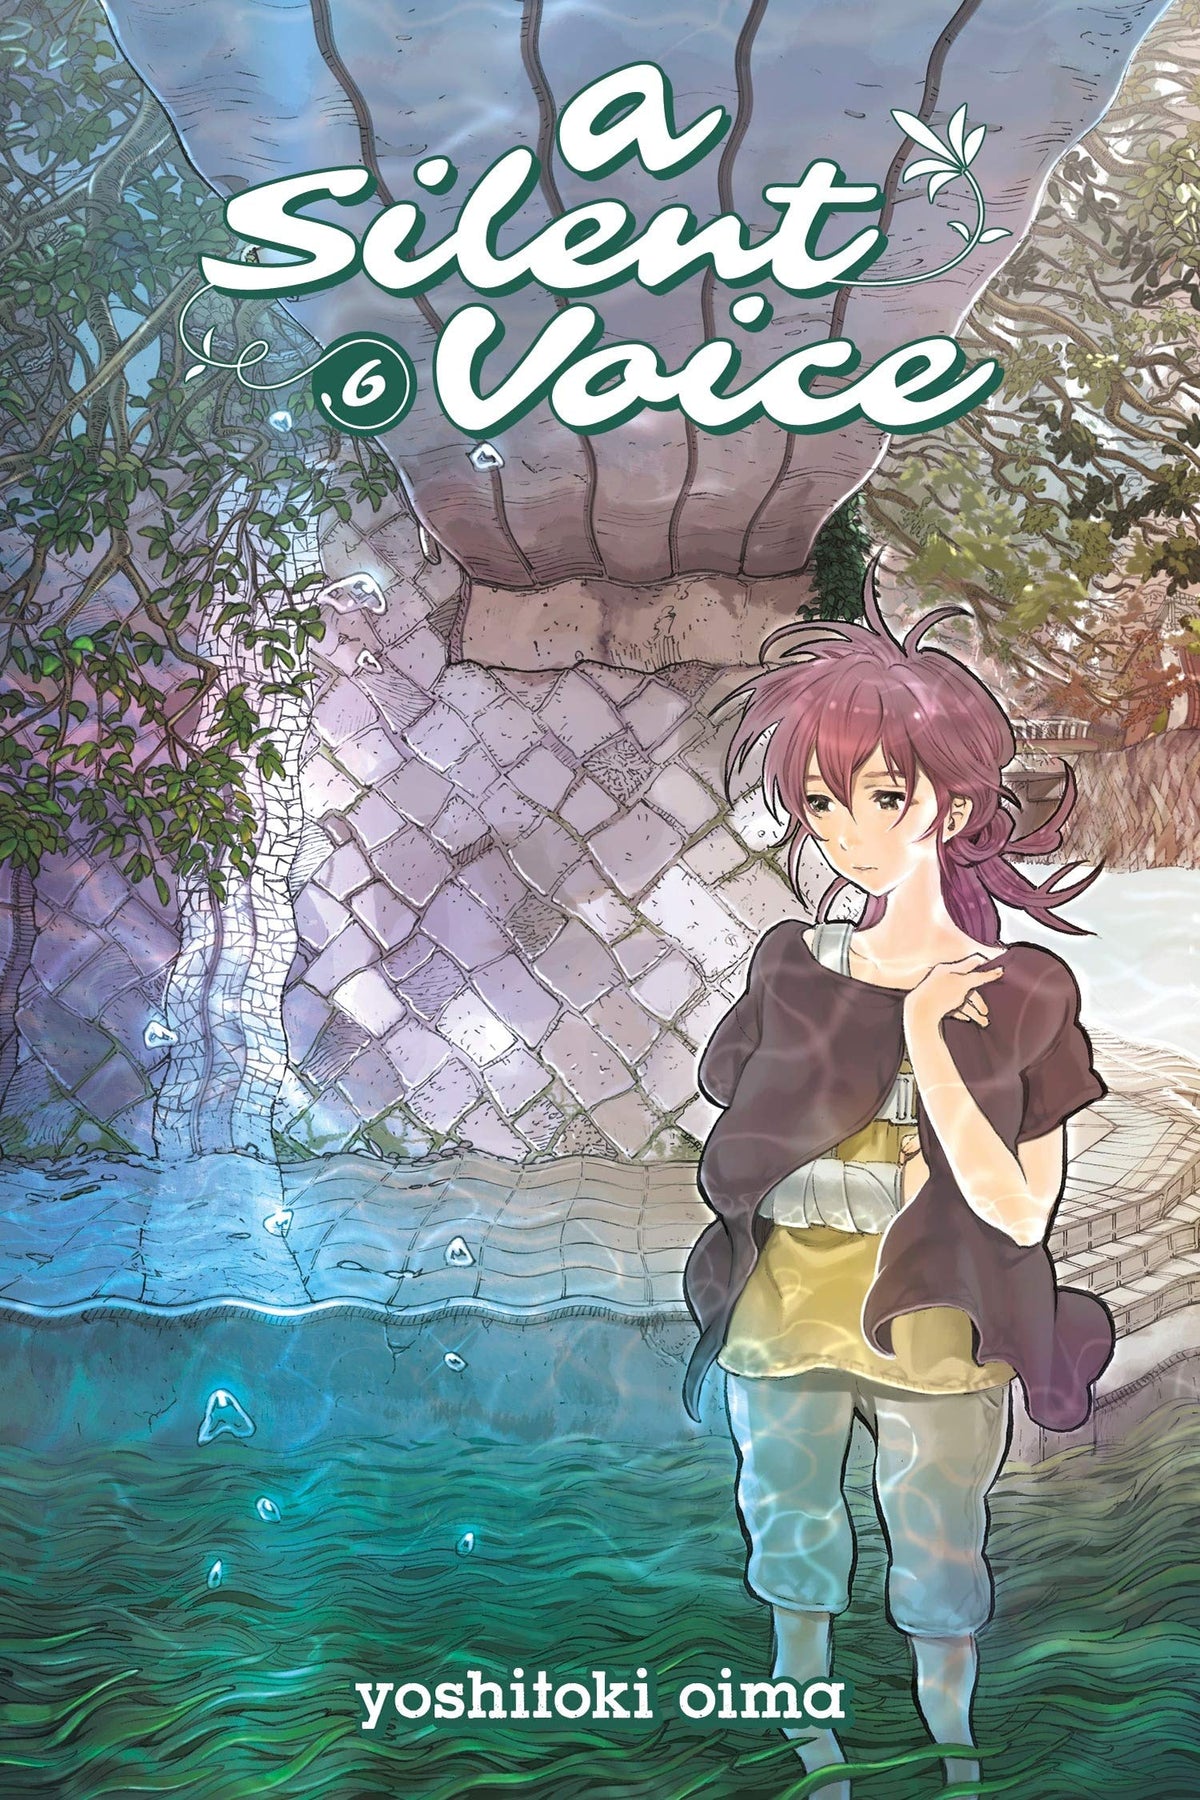 Silent Voice Vol. 6 - Third Eye